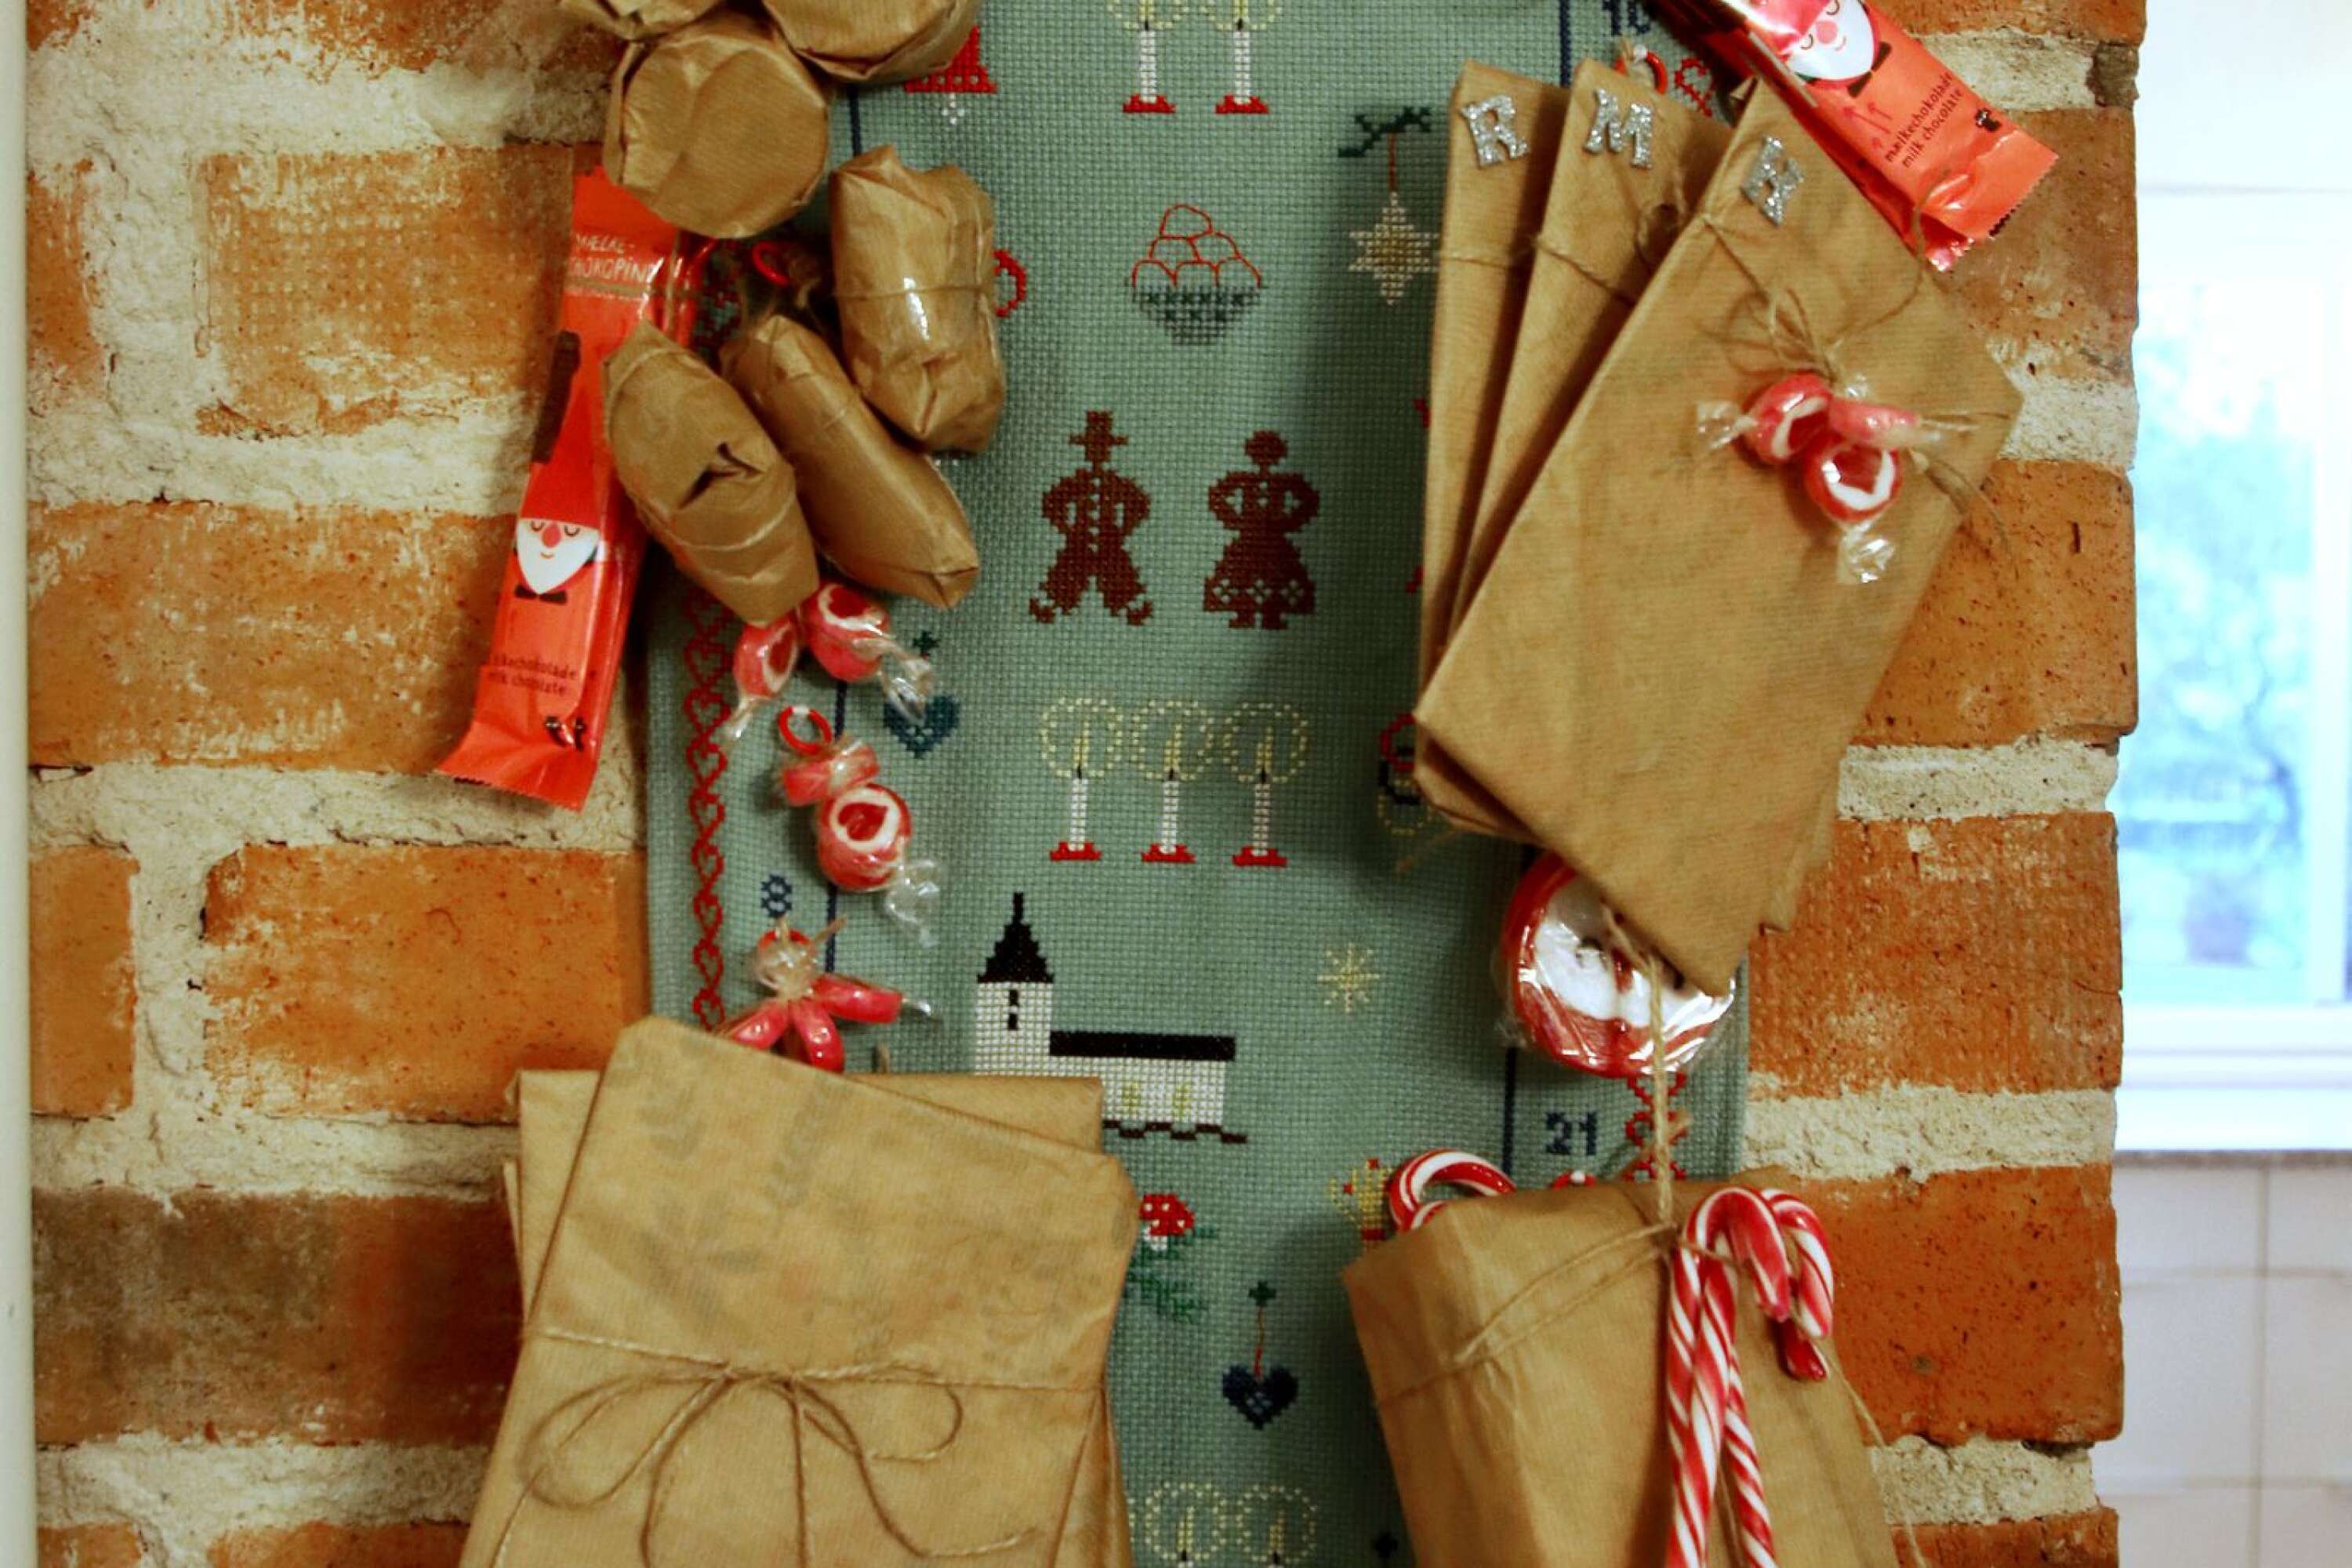 Årets paketkalender hos familjen Eriksson är en bonad som hennes farmor handbroderat. Små paket varvas med klubbor och polkagrisstänger. 